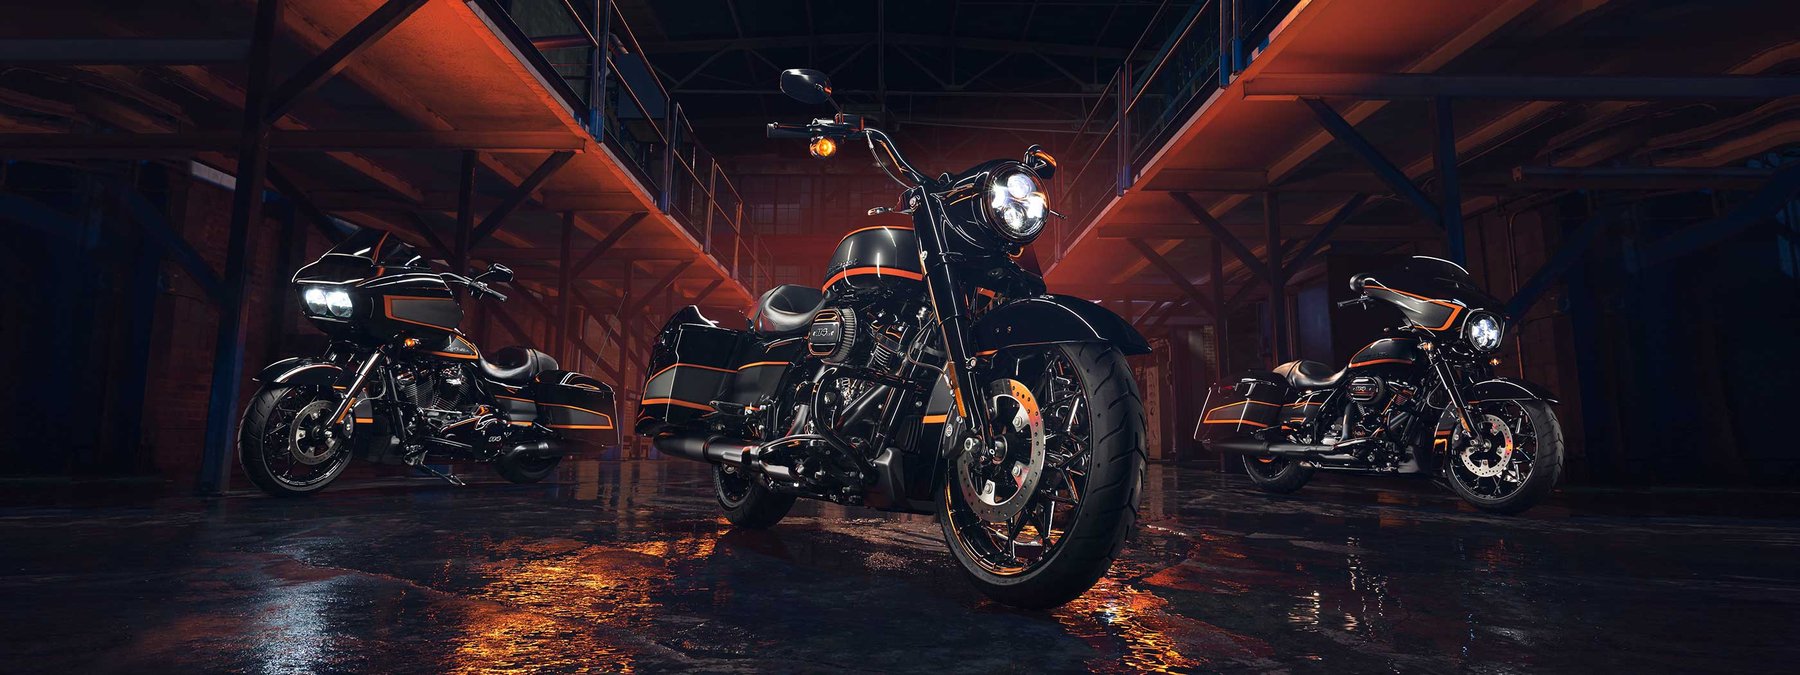 สีคัสตอม Apex ที่โดดเด่นบนมอเตอร์ไซค์ Harley-Davidson